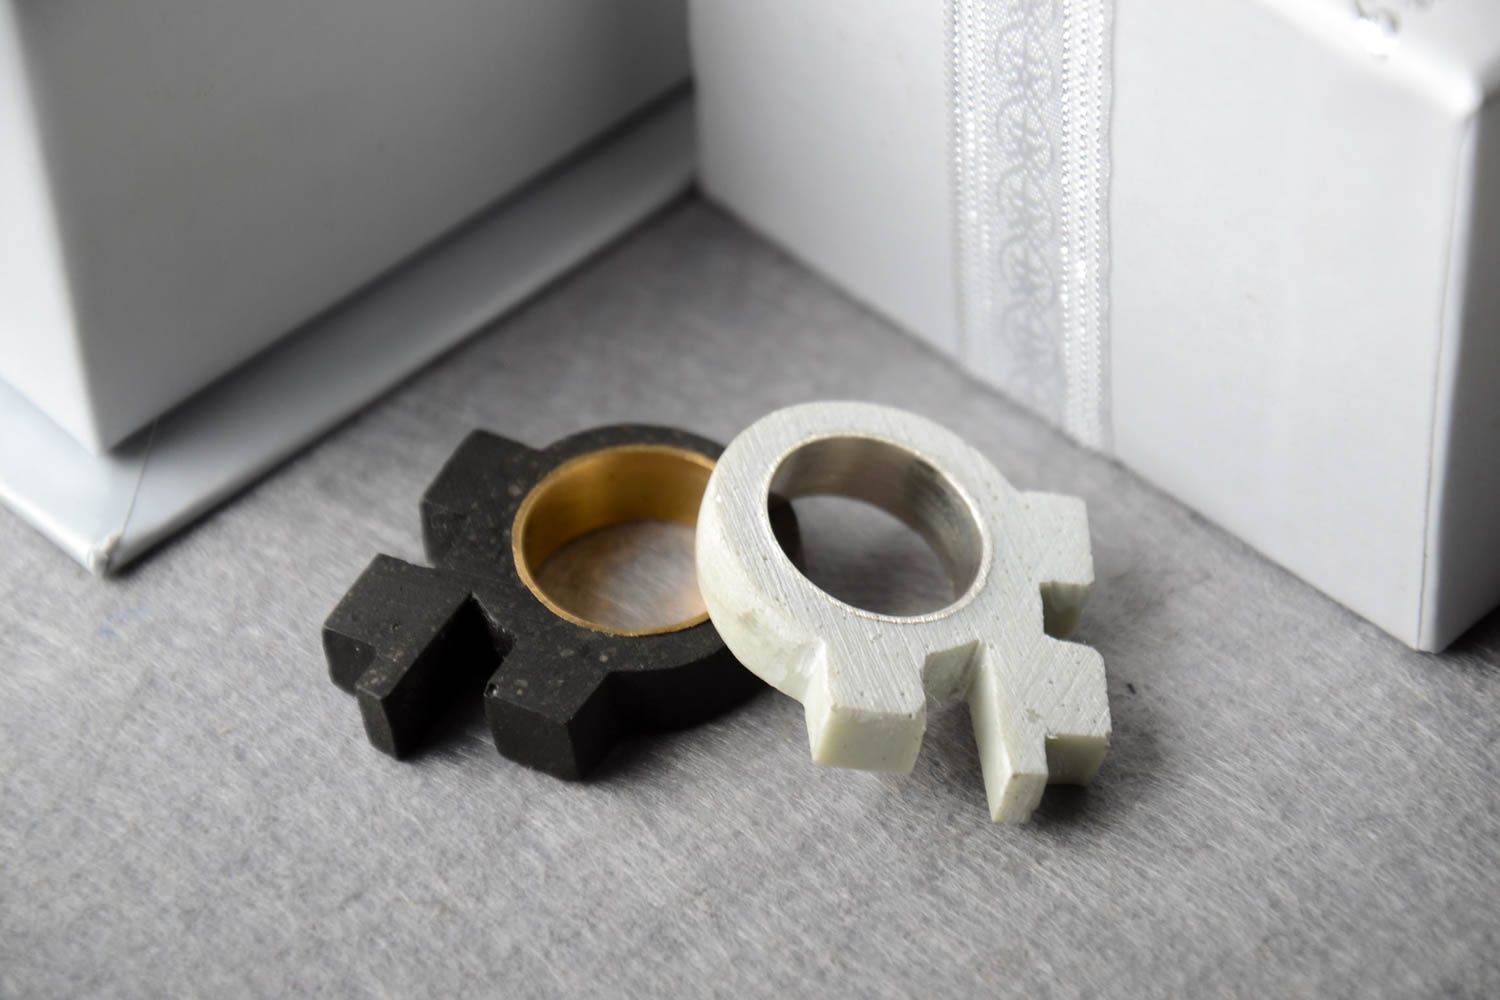 Кольца ручной работы две штуки красивые кольца из бетона кольца из латуни фото 1